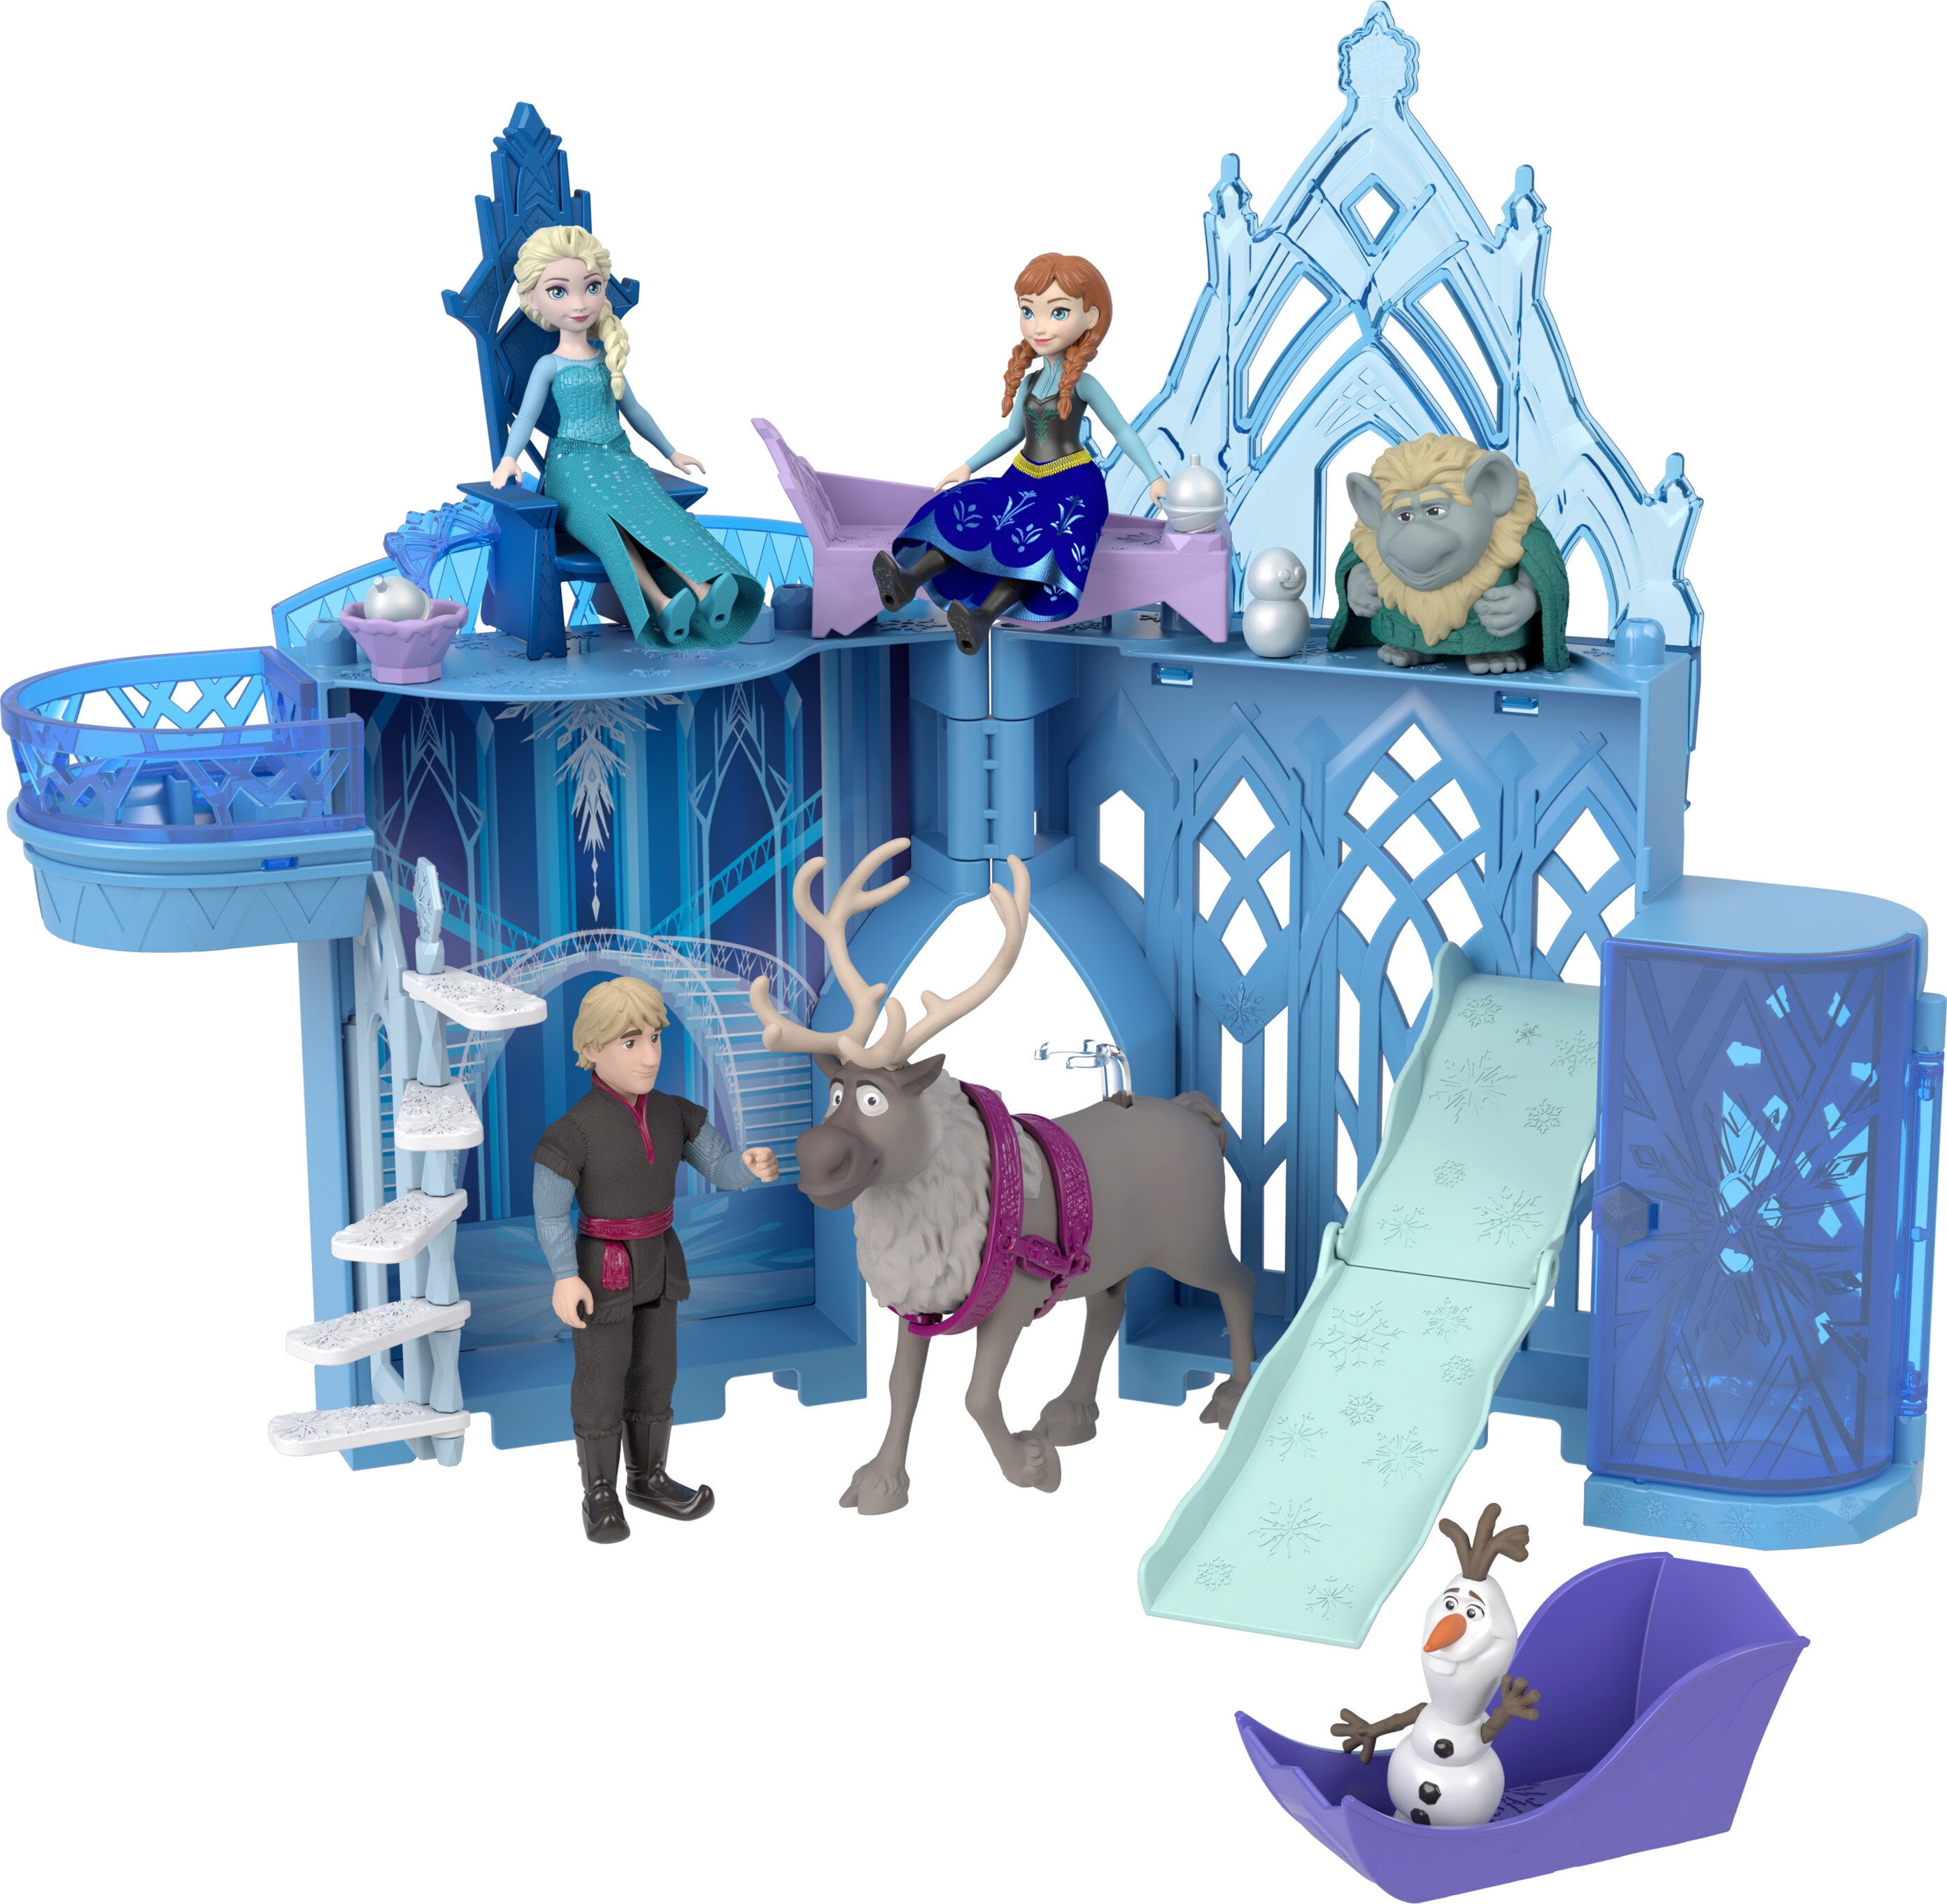 Disney frozen - set componibili palazzo di ghiaccio di elsa, playset  castello delle bambole impilabile, con mini bambola elsa, olaf e tanti  accessori, giocattolo per bambini, 3+ anni, hlx01 - Toys Center